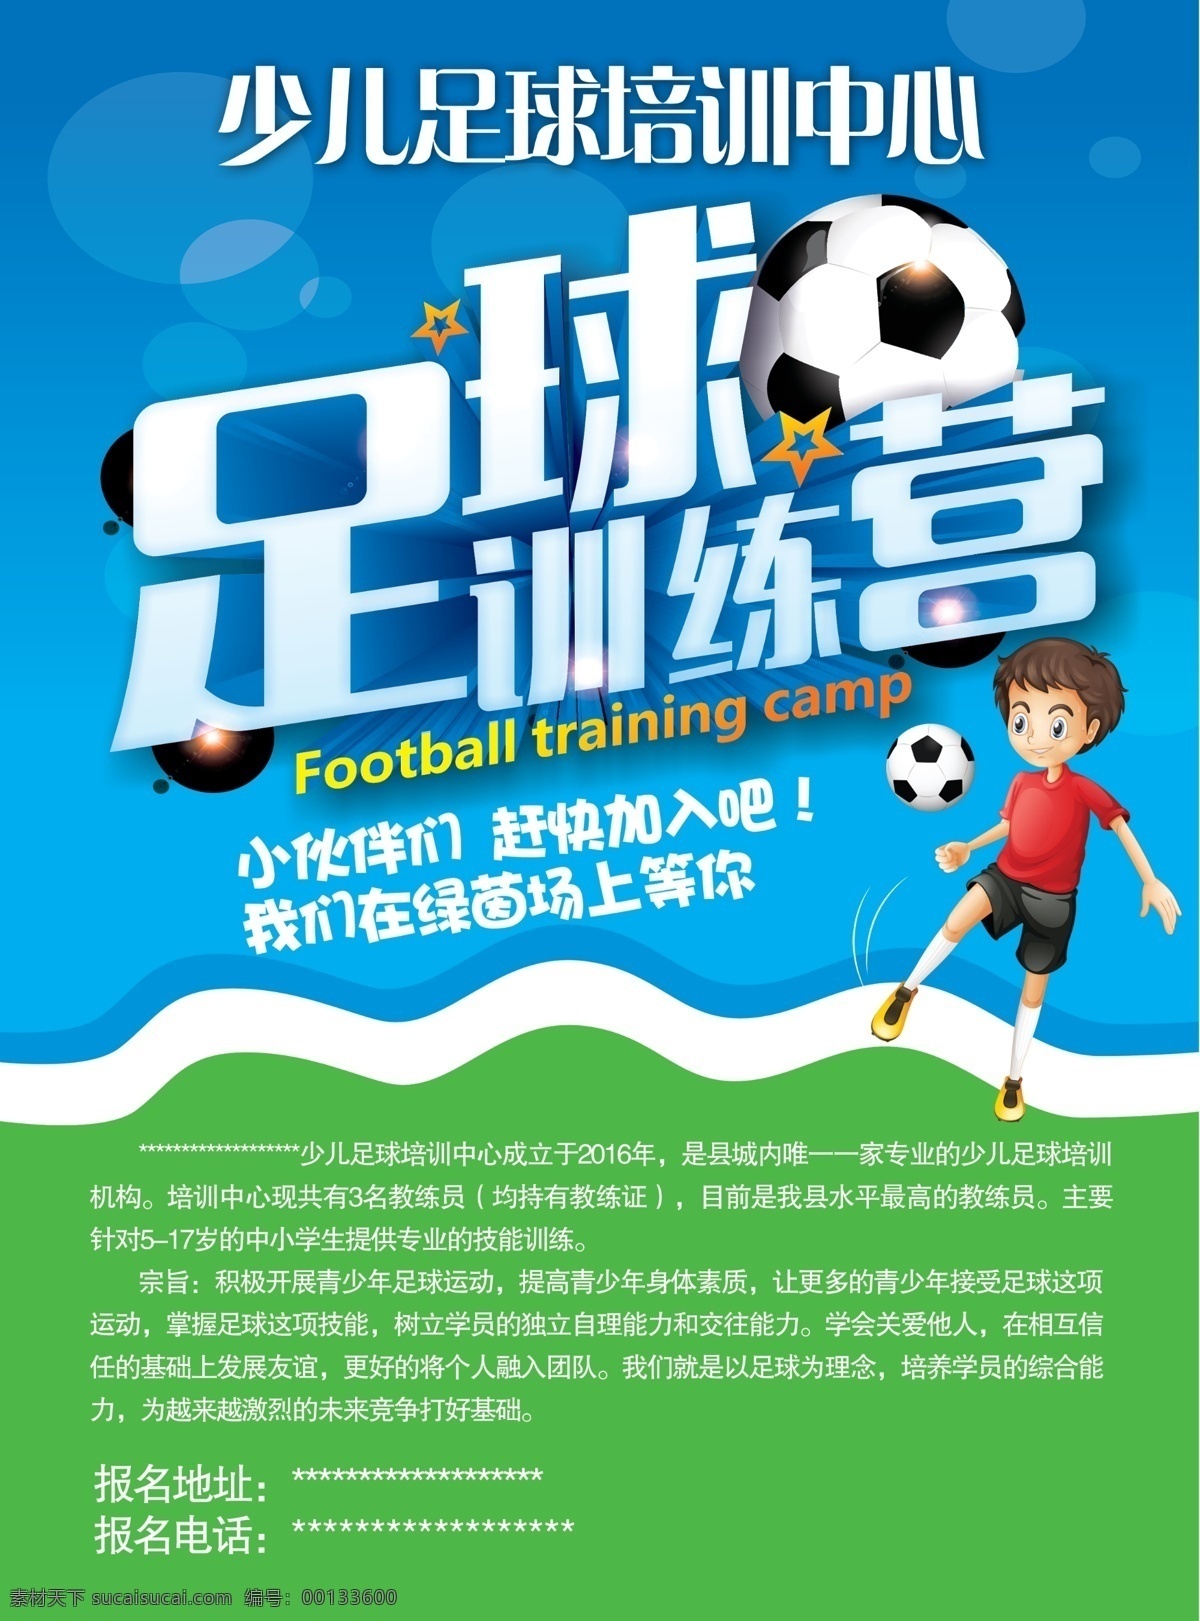 少儿 足球 培训中心 宣传单 少儿足球 足球训练营 招生简章 专业 正规 绿色 dm宣传单